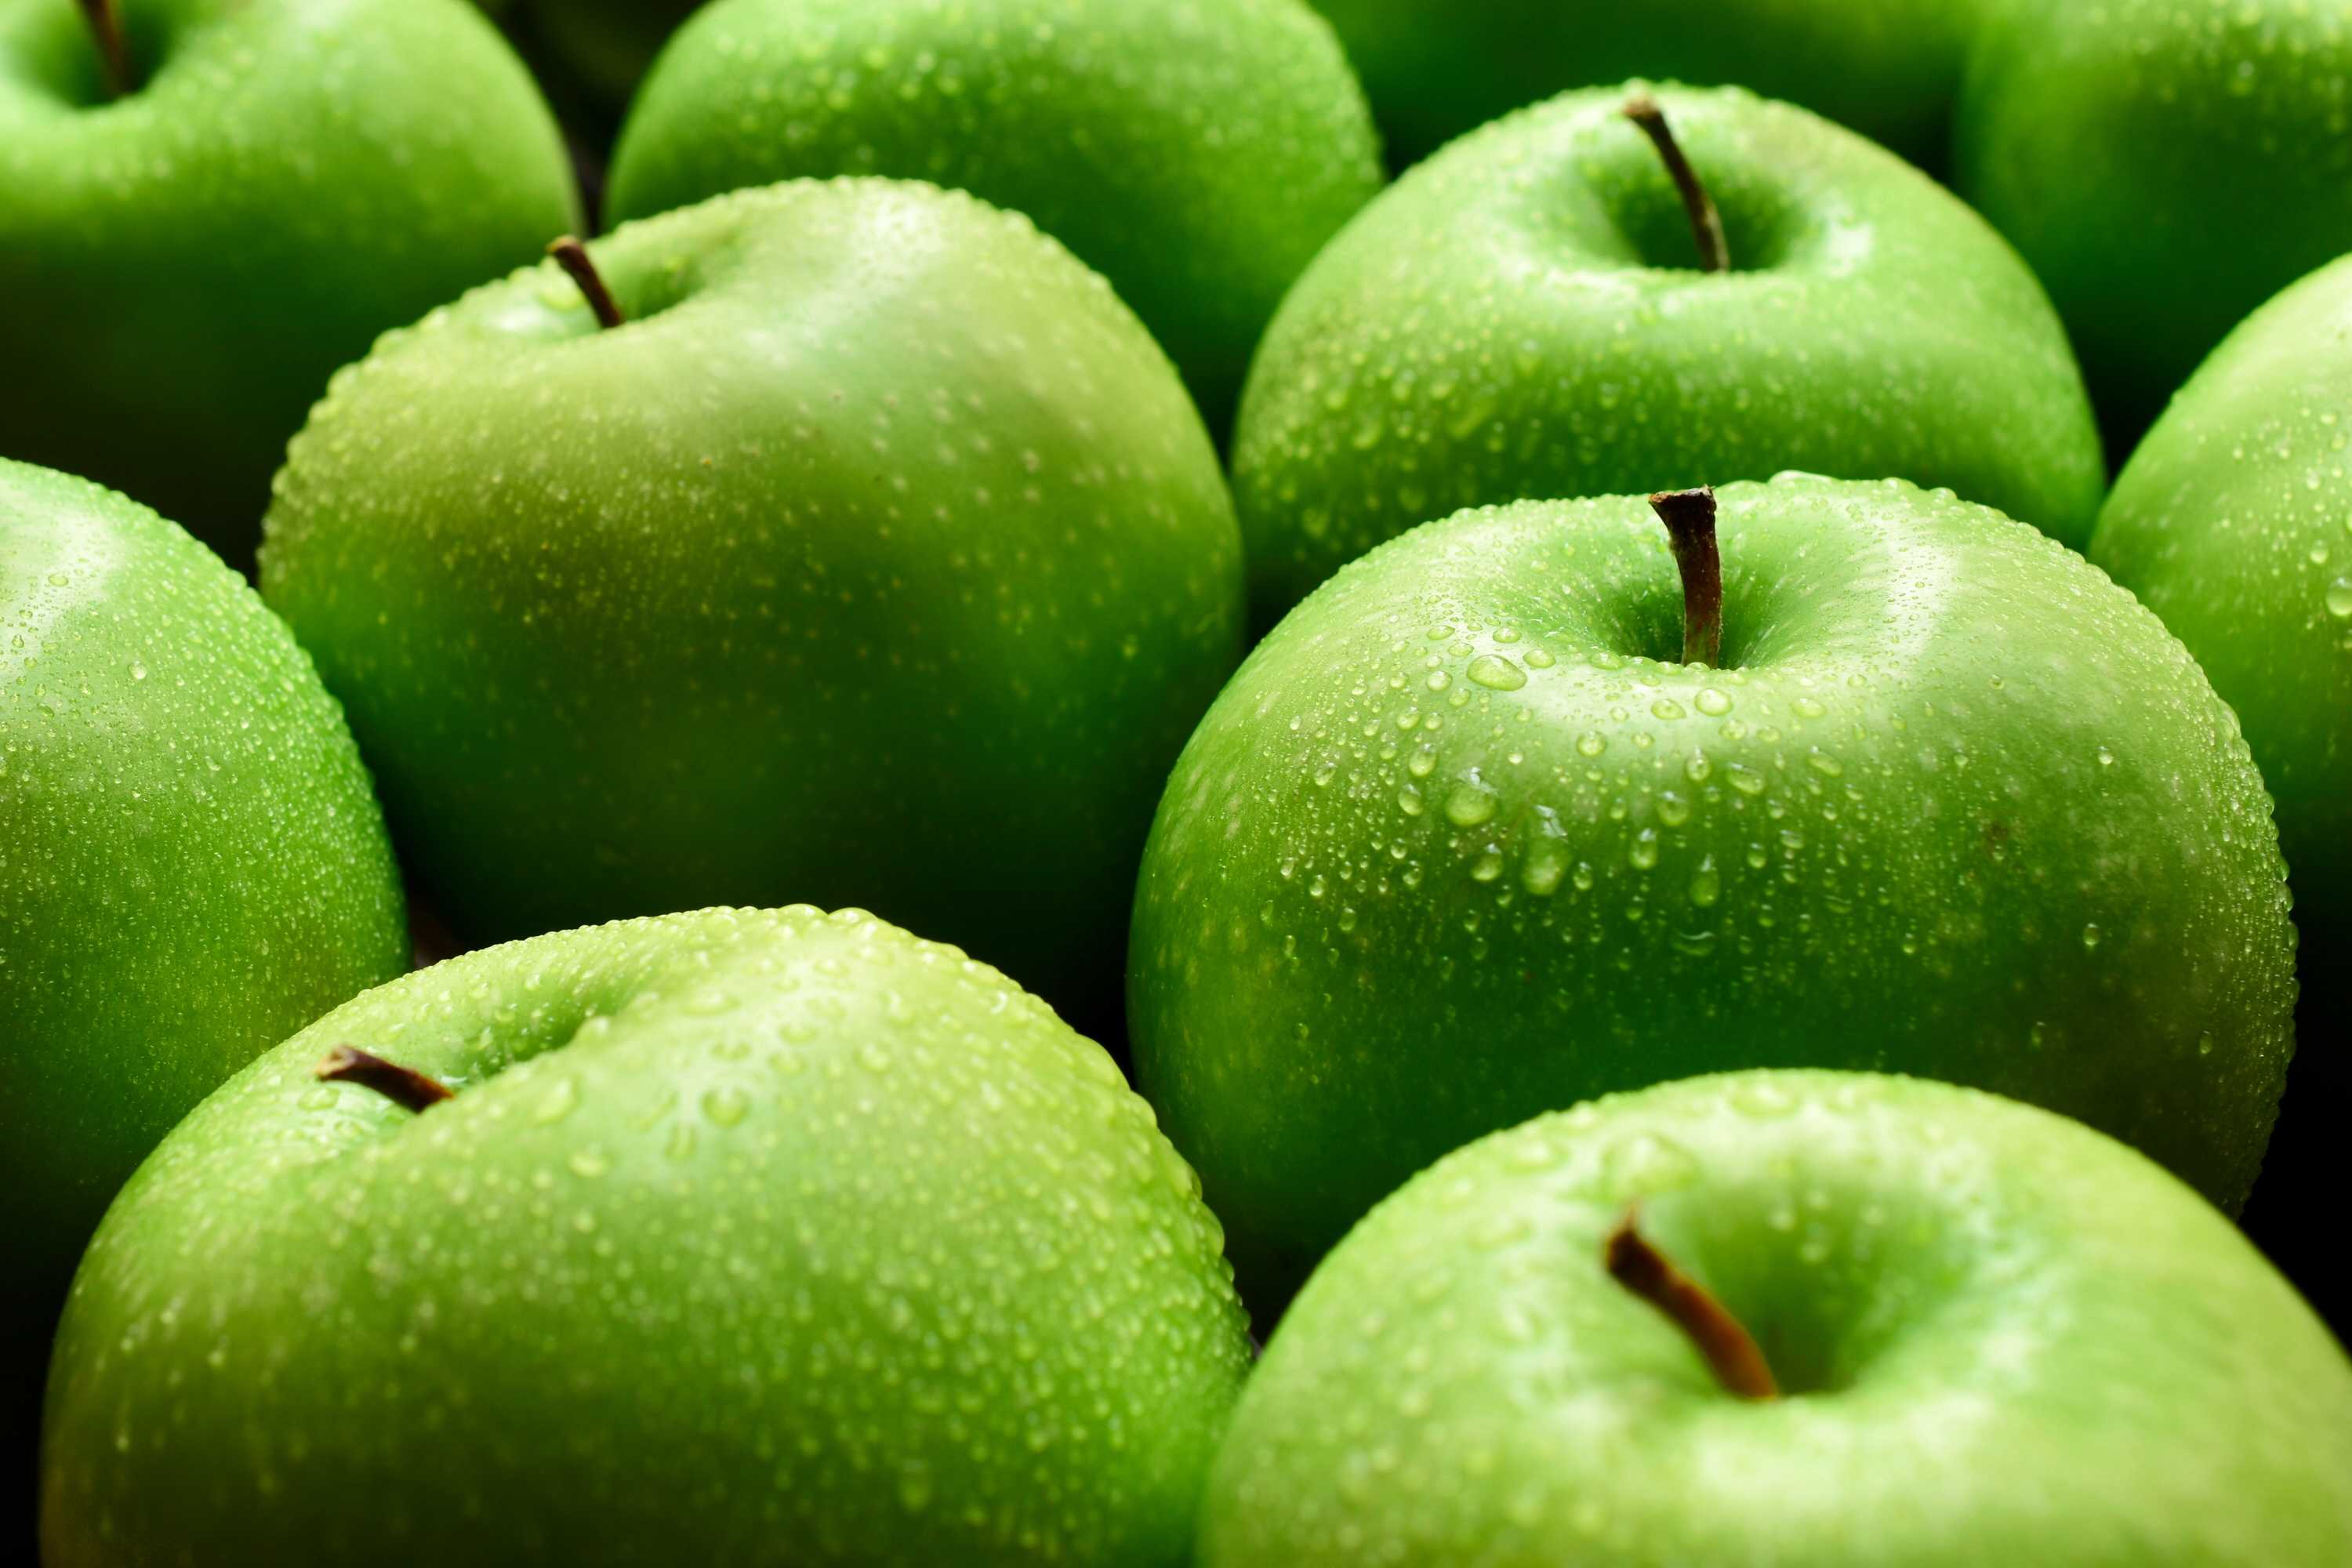 microsoft, preguntar a un profesional en nutrición: ¿cuáles son los beneficios nutricionales de las manzanas y los plátanos?